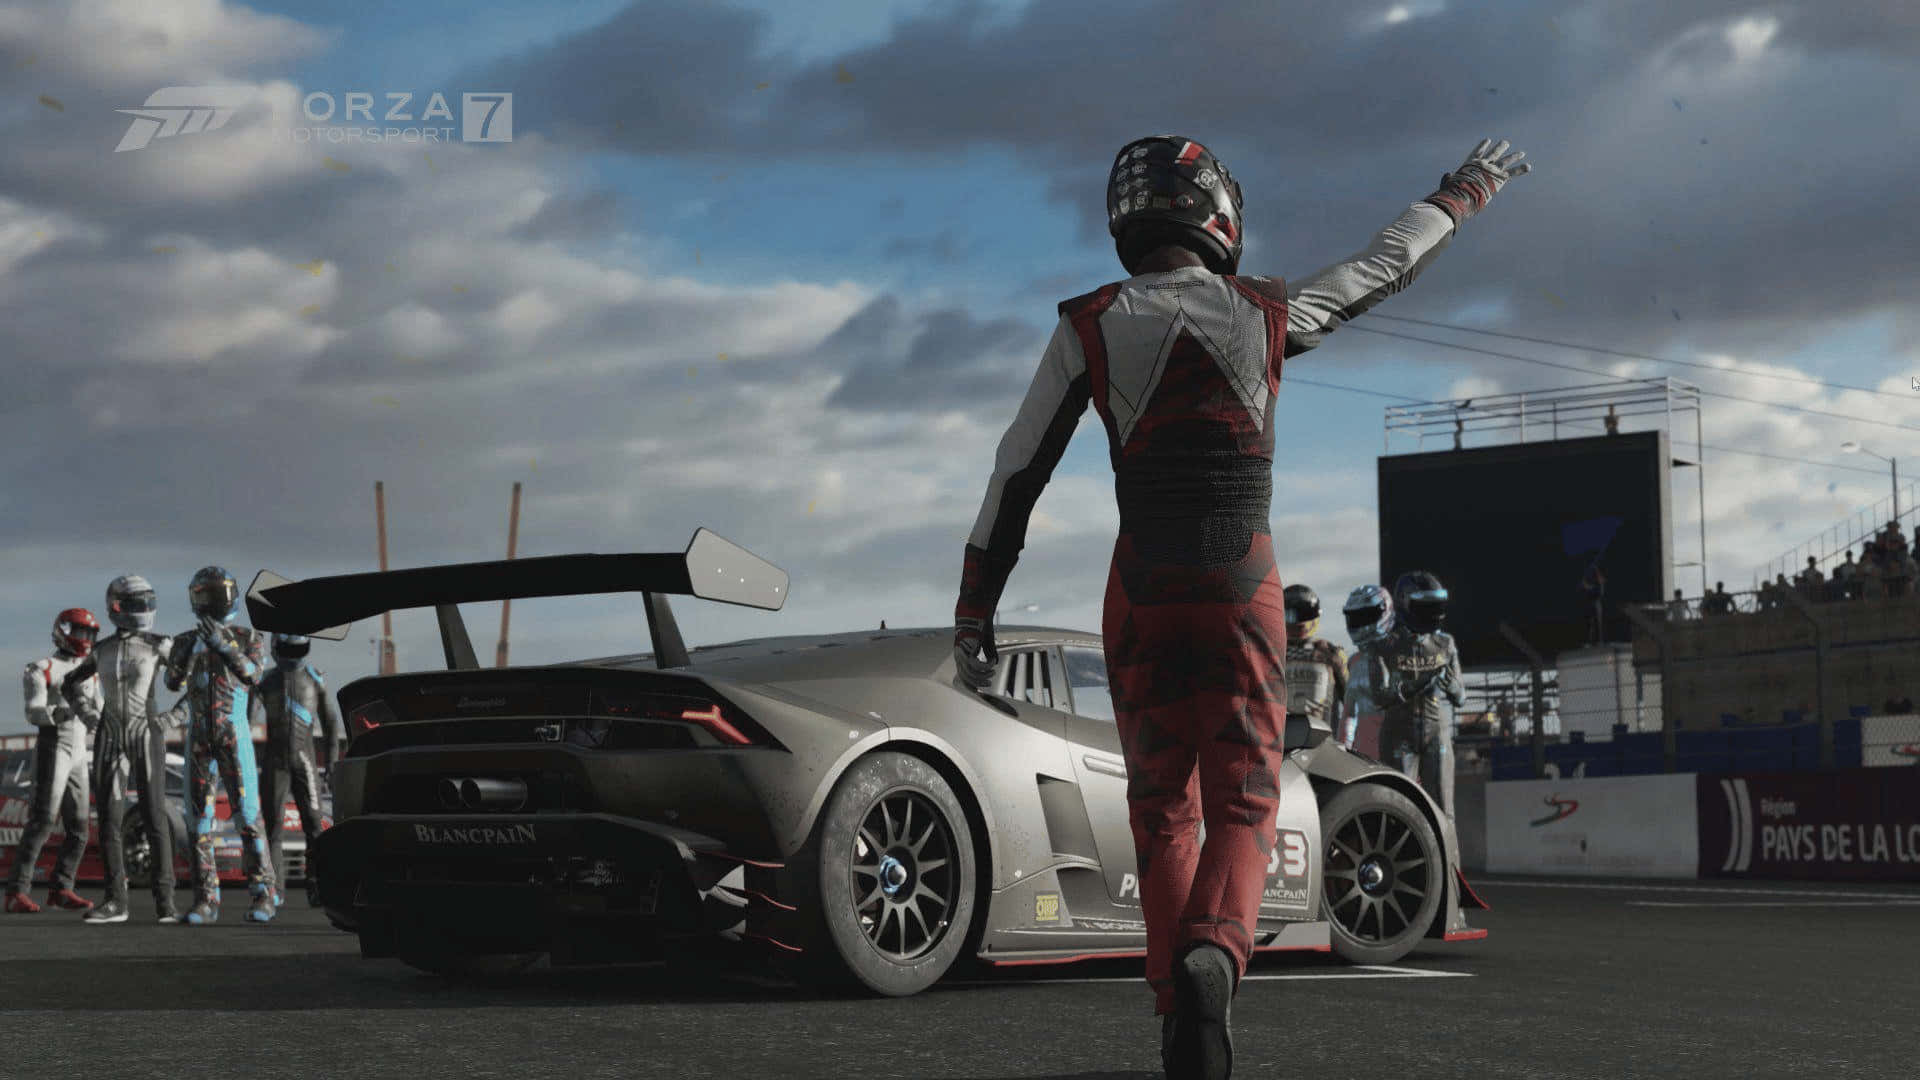 Tävlatill Toppen I 1080p Med Forza Motorsport 7 Som Bakgrundsbild På Din Dator Eller Mobiltelefon.